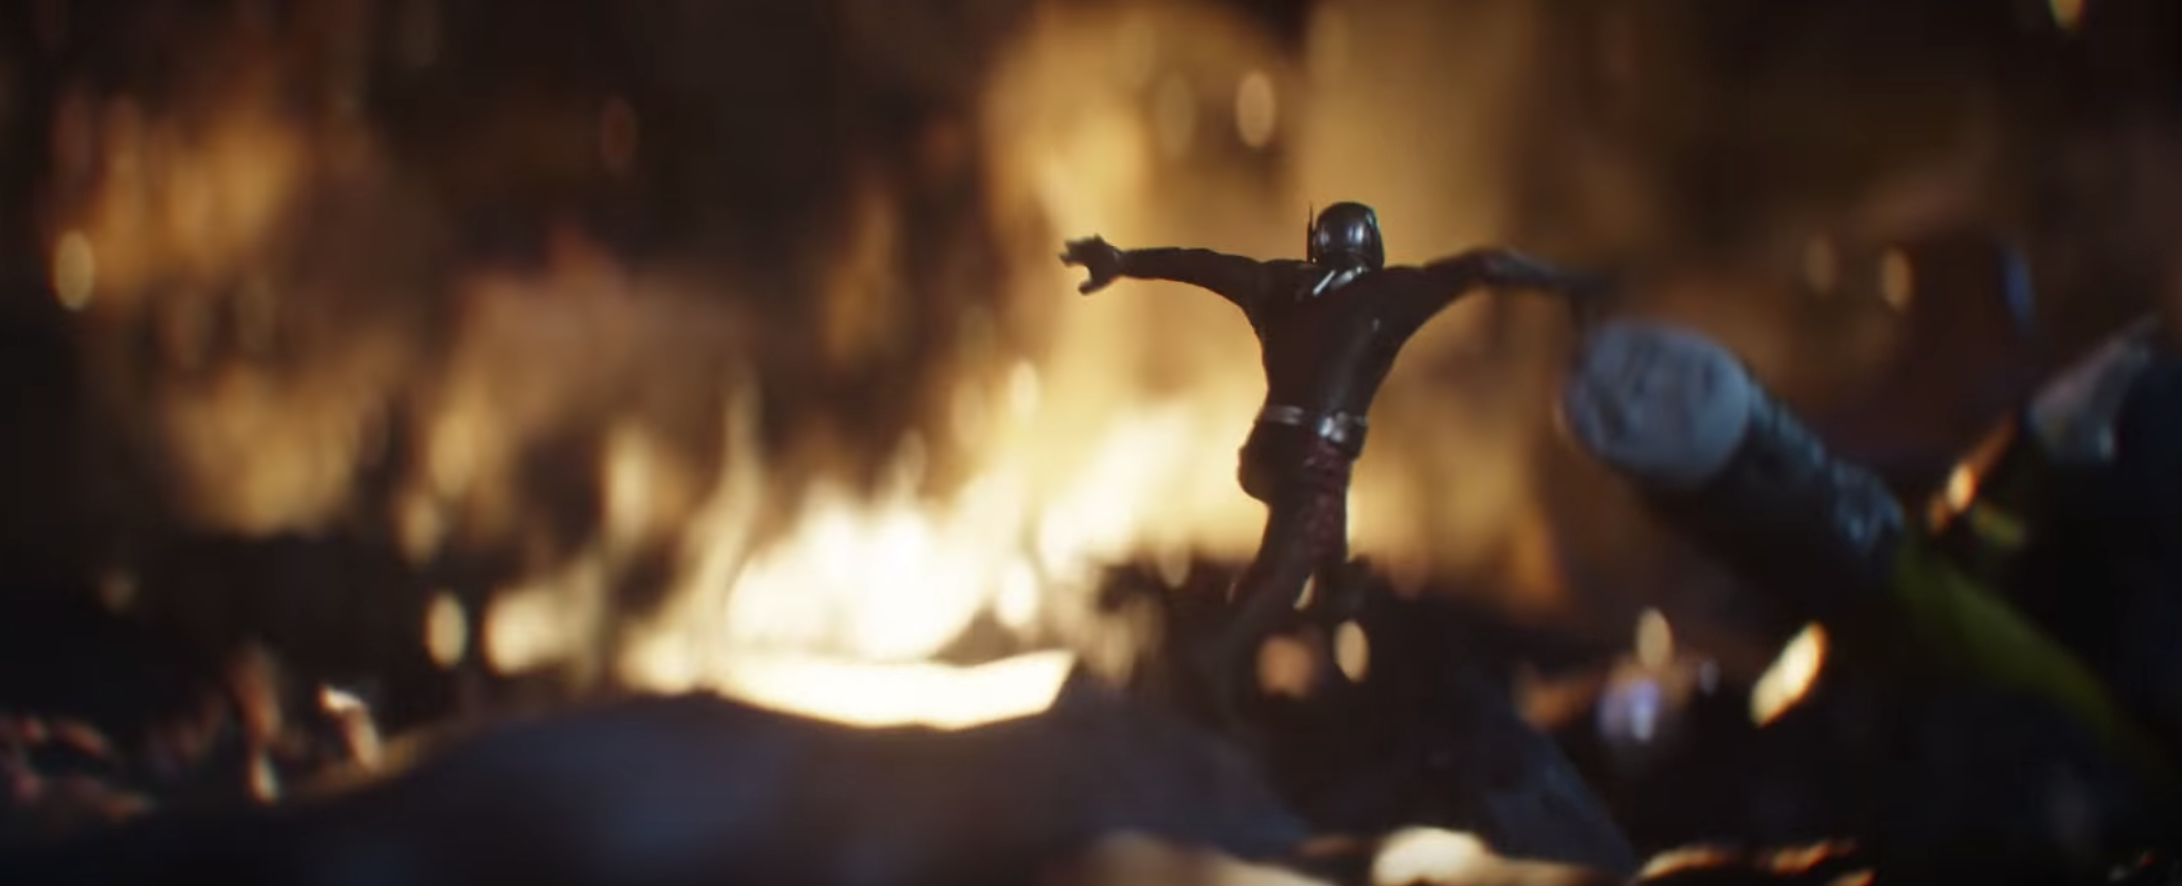 Ant-Man meets Thor's hammer in Avengers: Endgame trailer